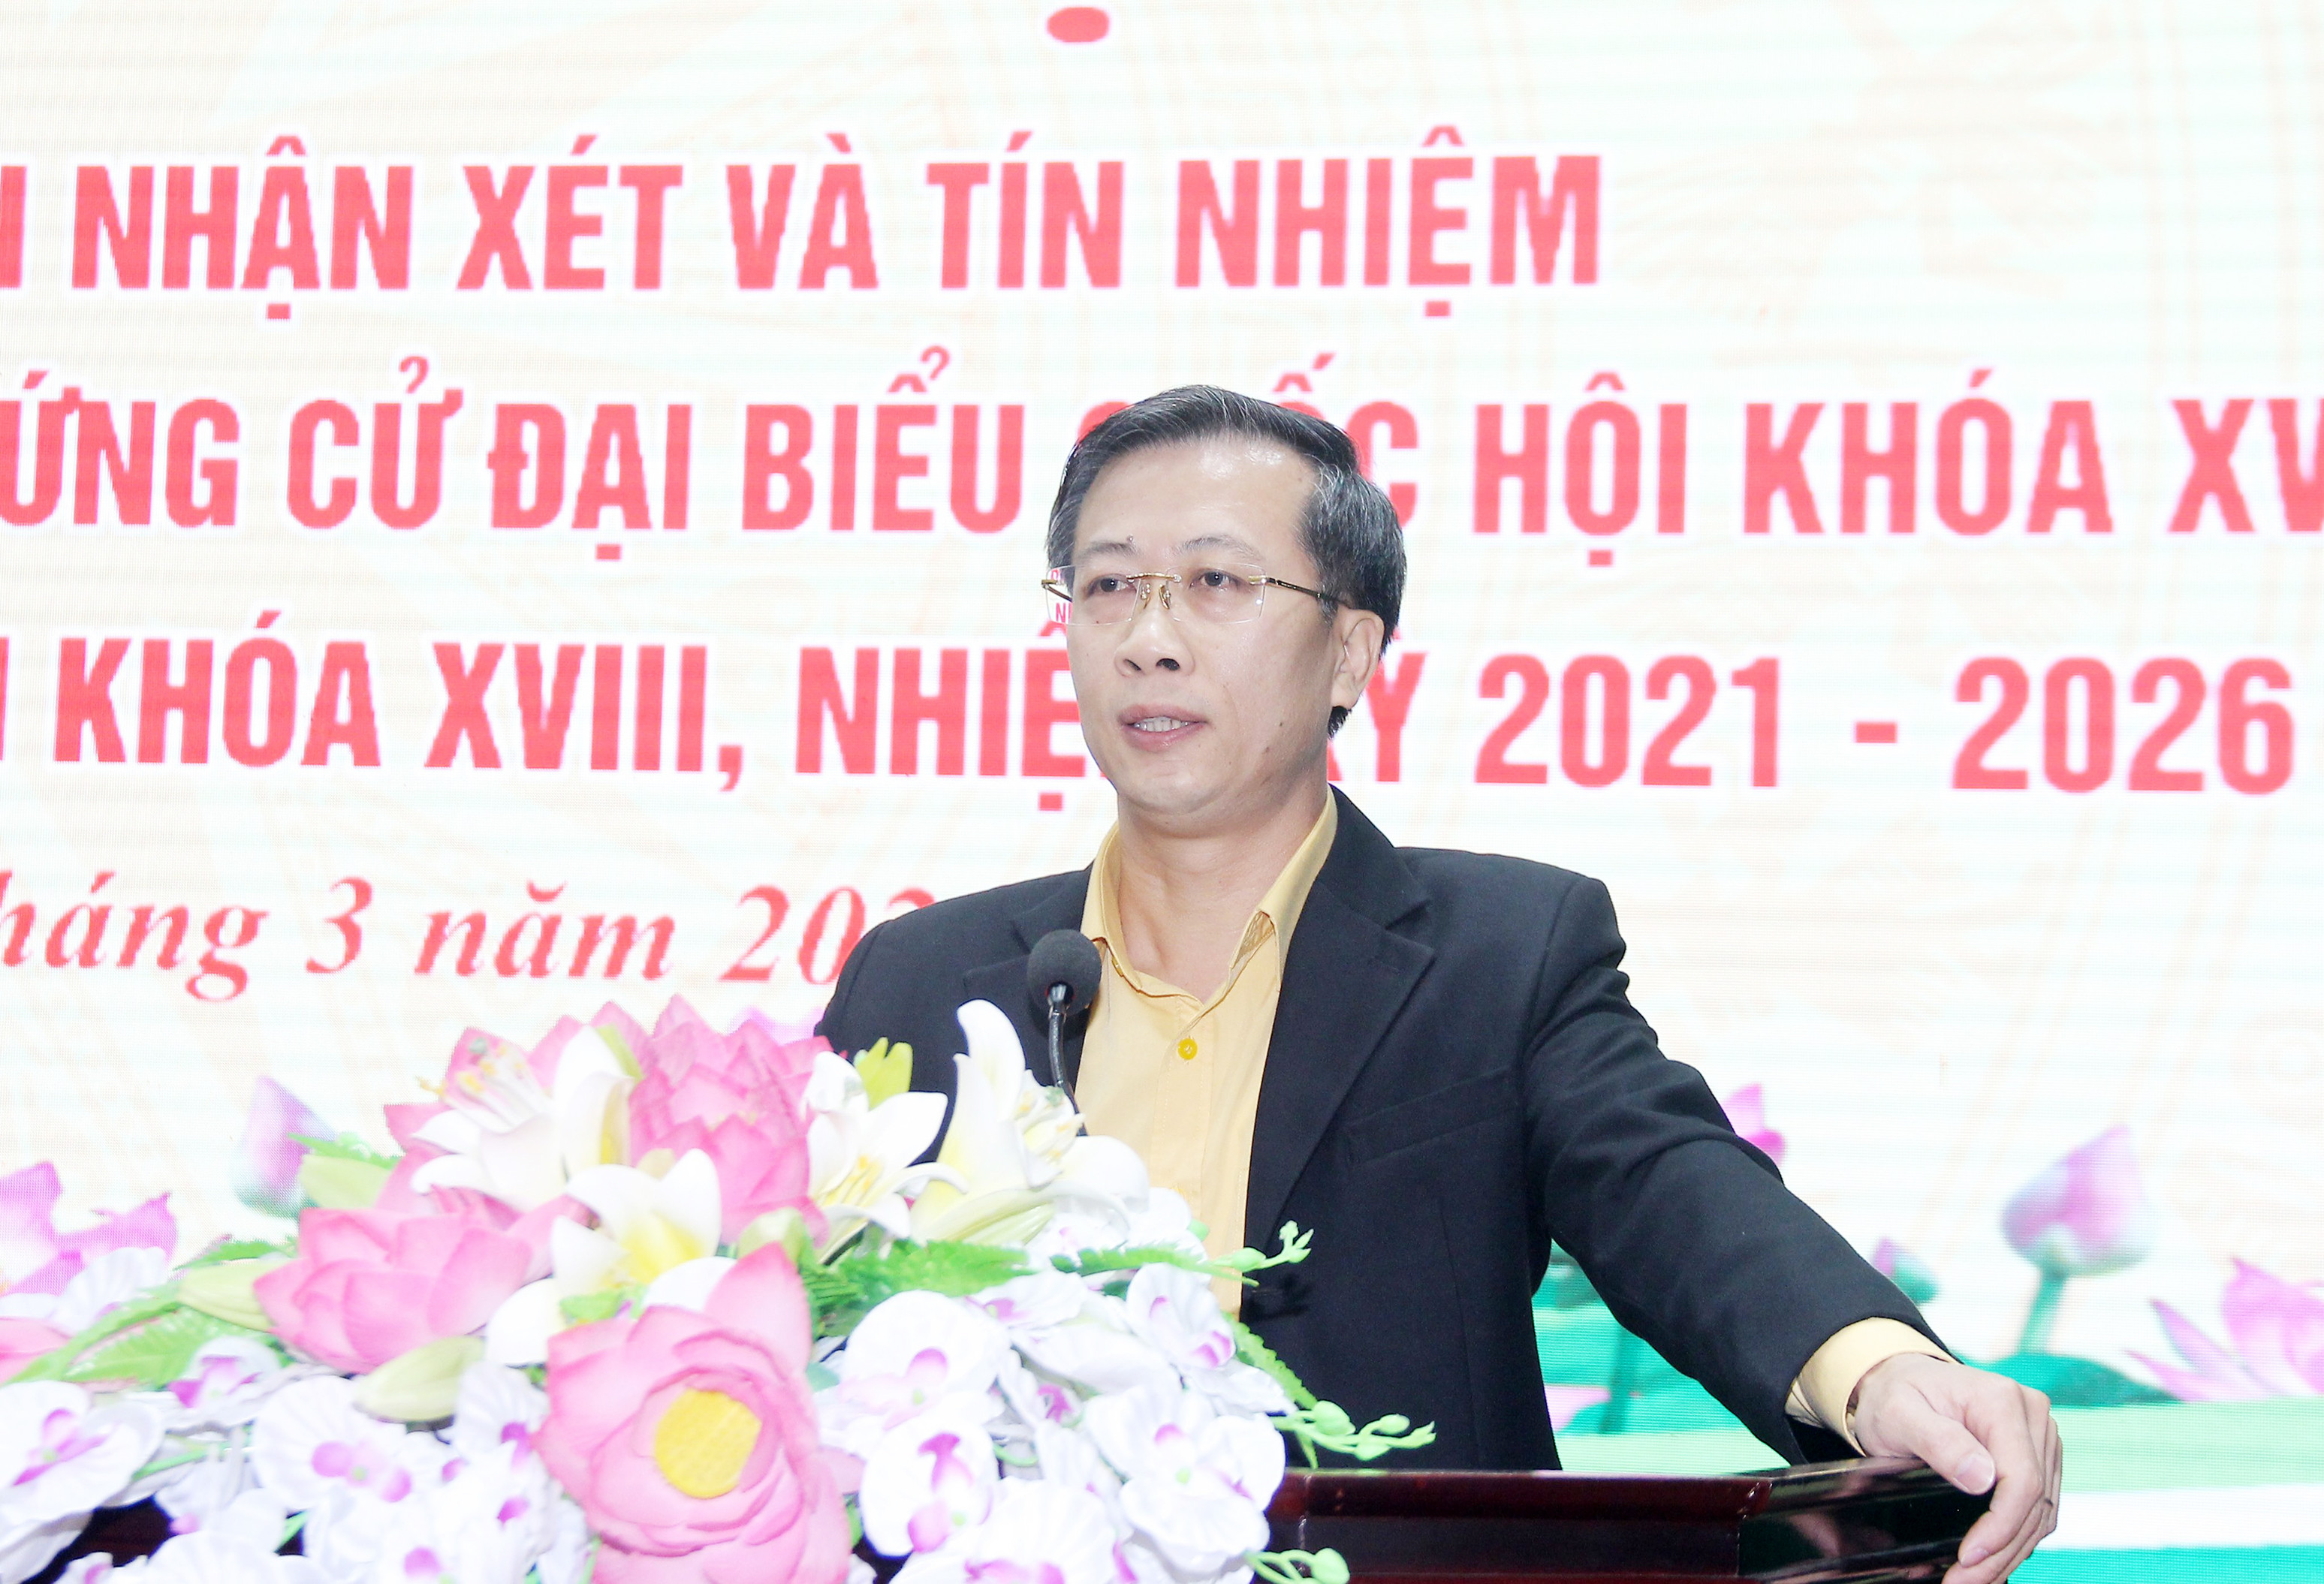 Đồng chí Nguyễn Đức Thành - Phó Chủ tịch Ủy ban MTTQ Việt Nam tỉnh hướng dẫn một số nội dung liên quan đến hội nghị lấy ý kiến cử tri nơi cư trú. Ảnh: Mai Hoa